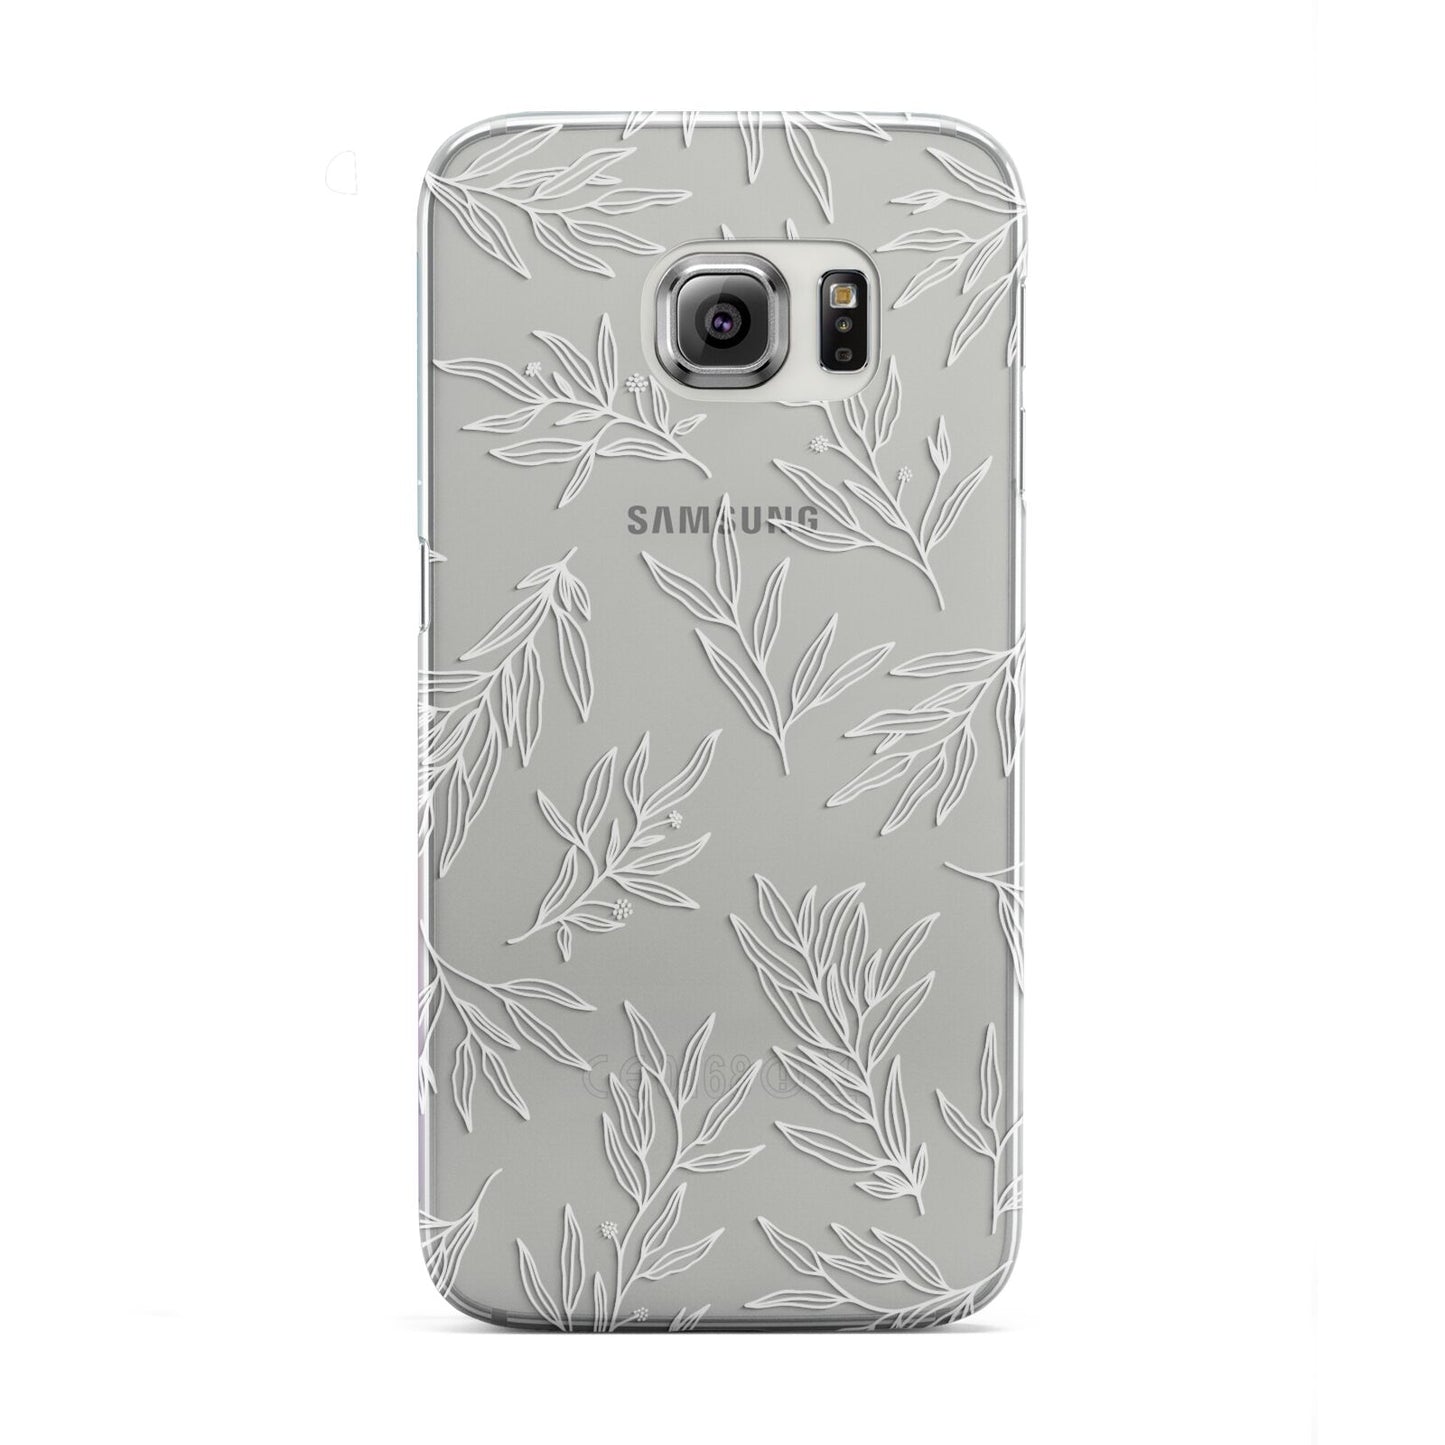 Botanical Leaf Samsung Galaxy S6 Edge Case